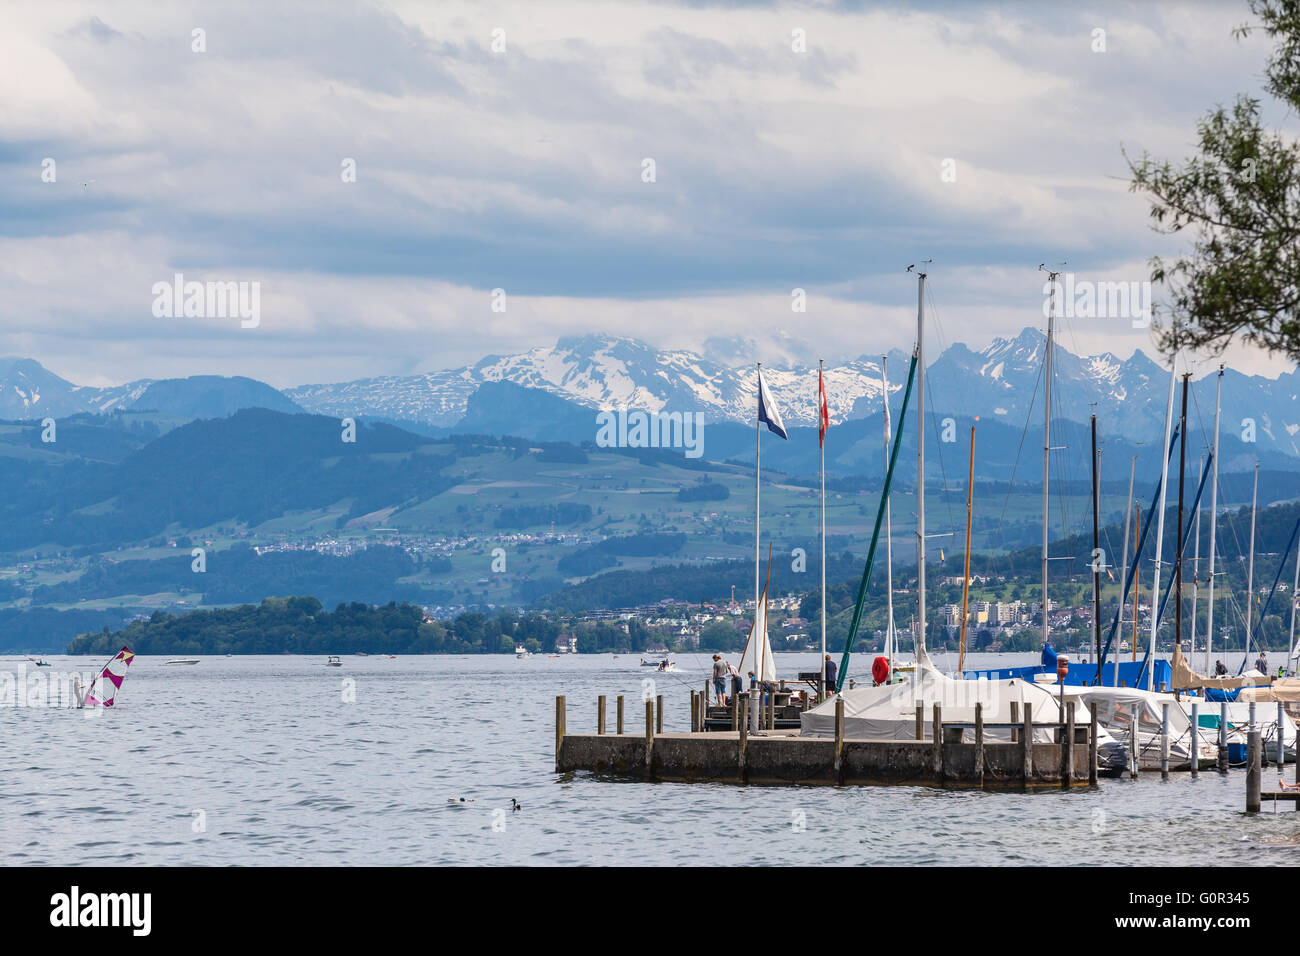 Vista panoramica del lago di Zurigo con le alpi svizzere in background, Svizzera Foto Stock